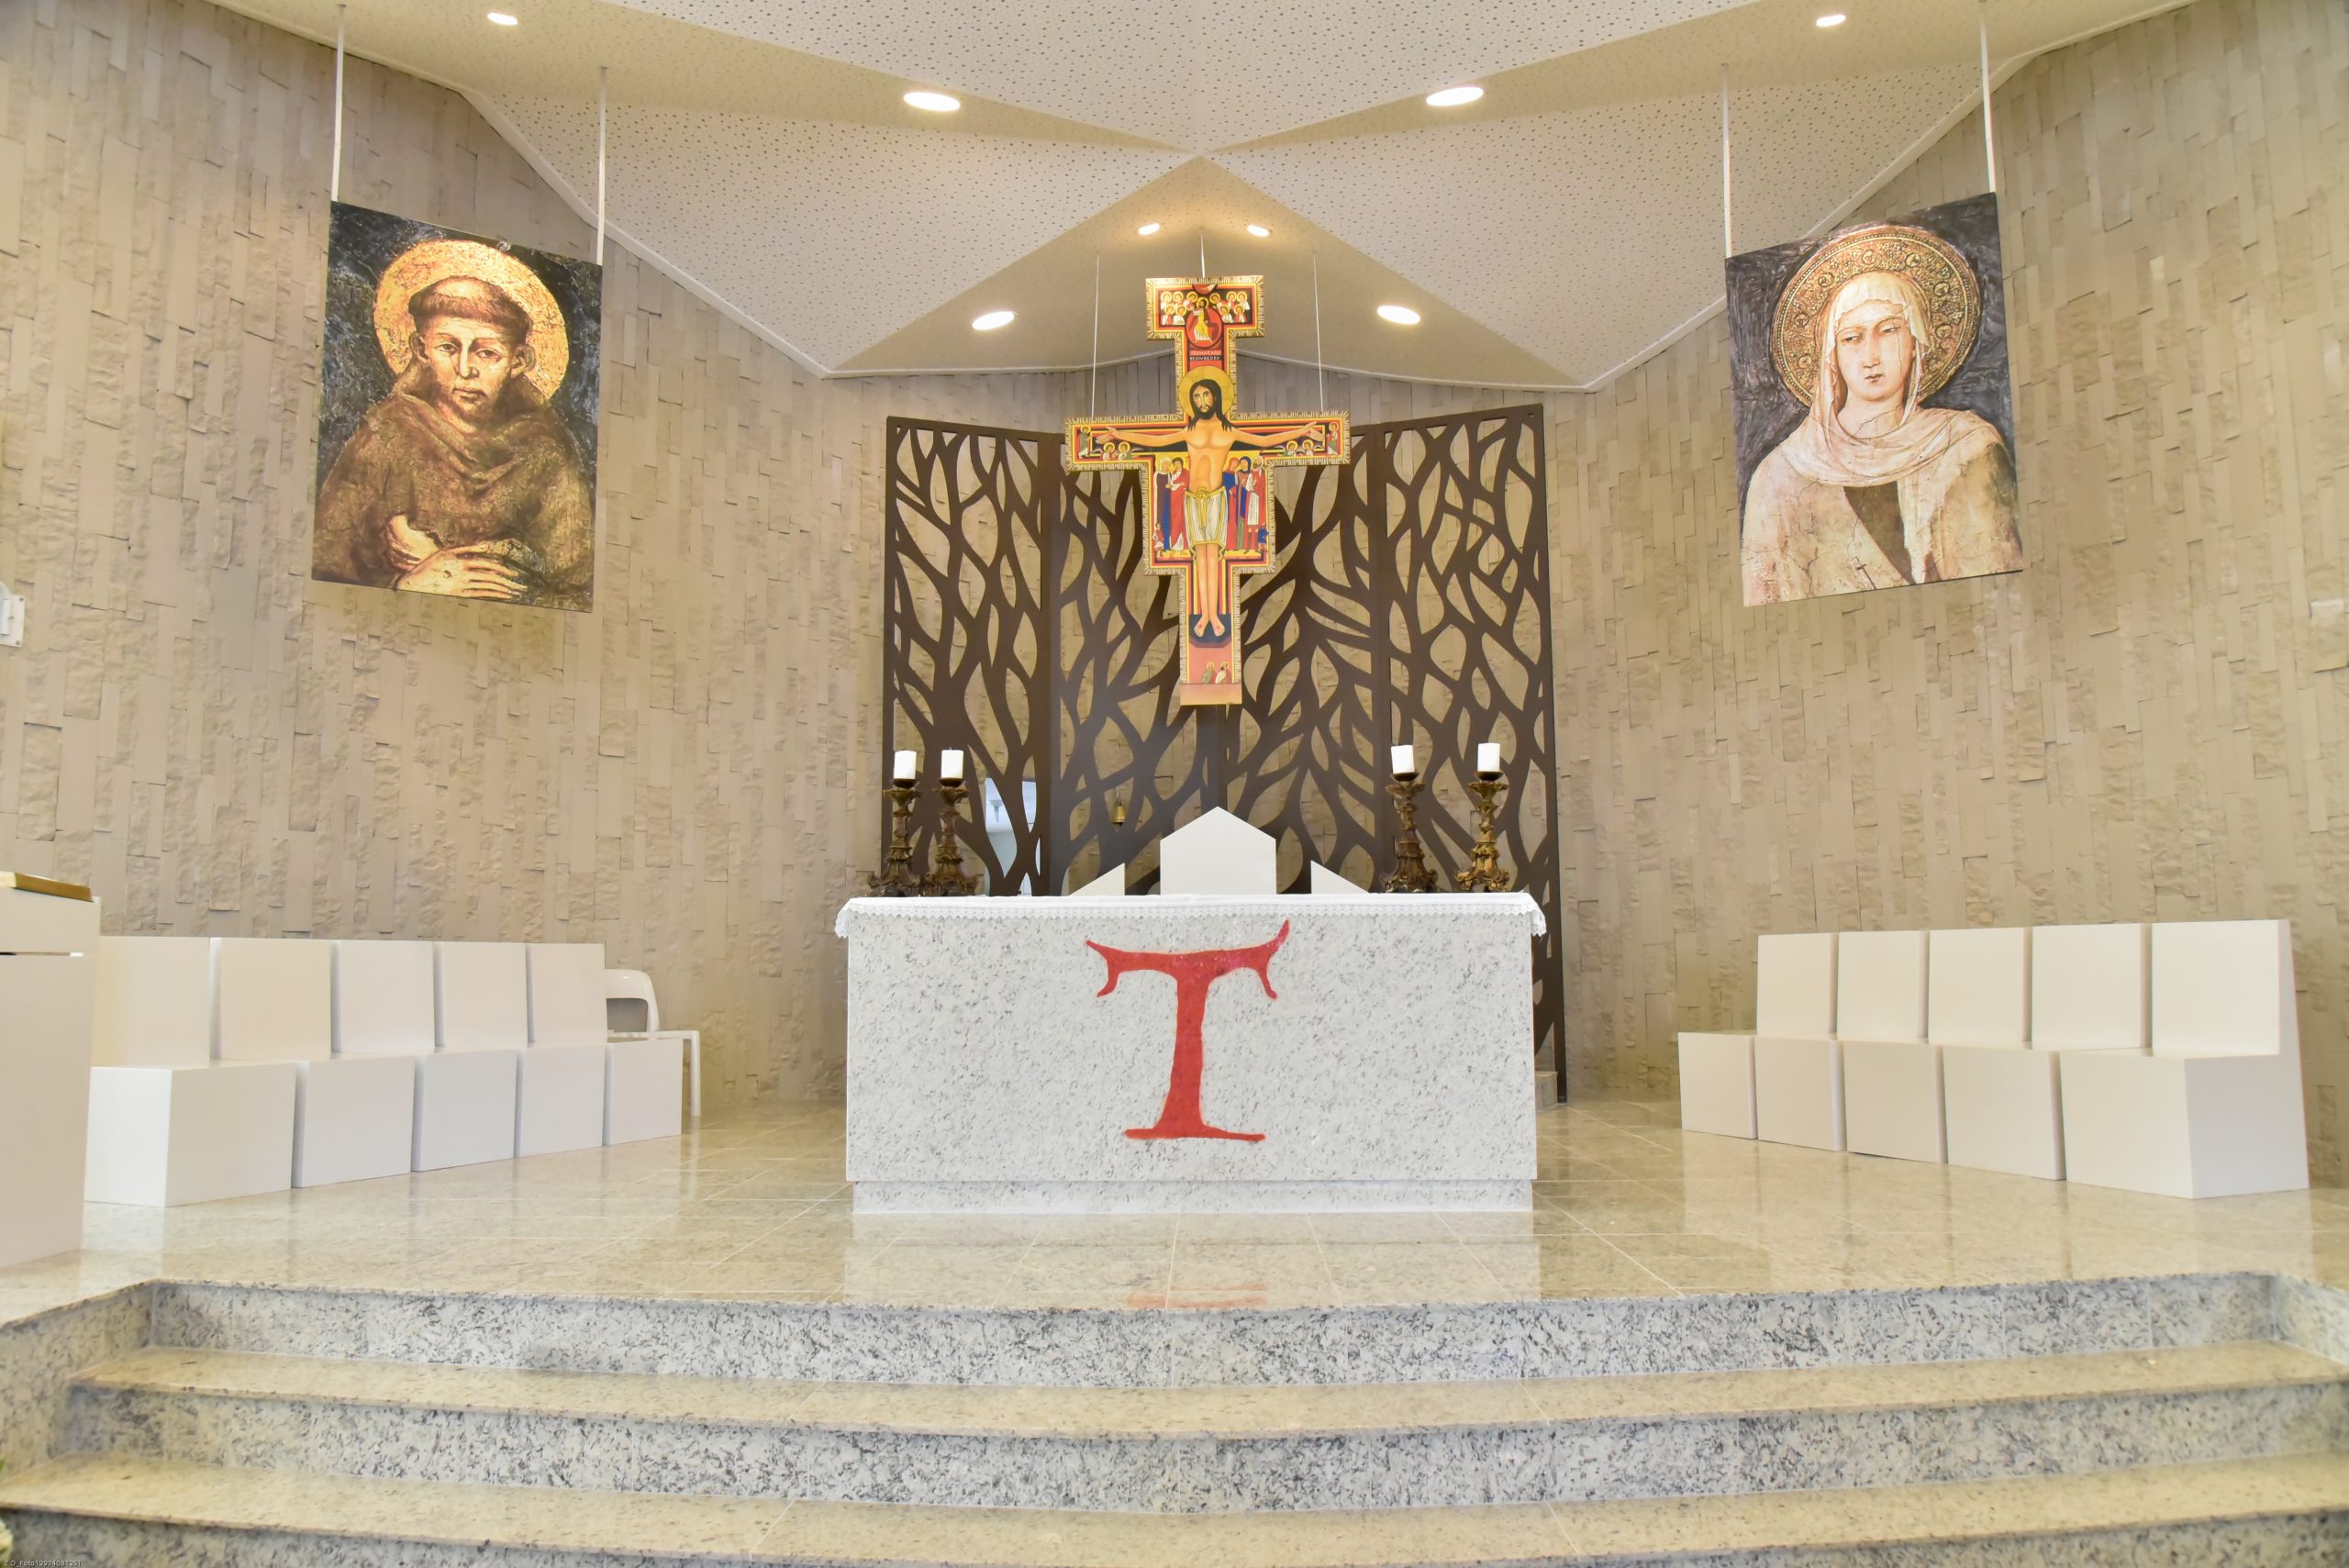 Paróquia São Francisco de Assis - 🙏🏻📖 Liturgia Diária 📖🙏🏻16